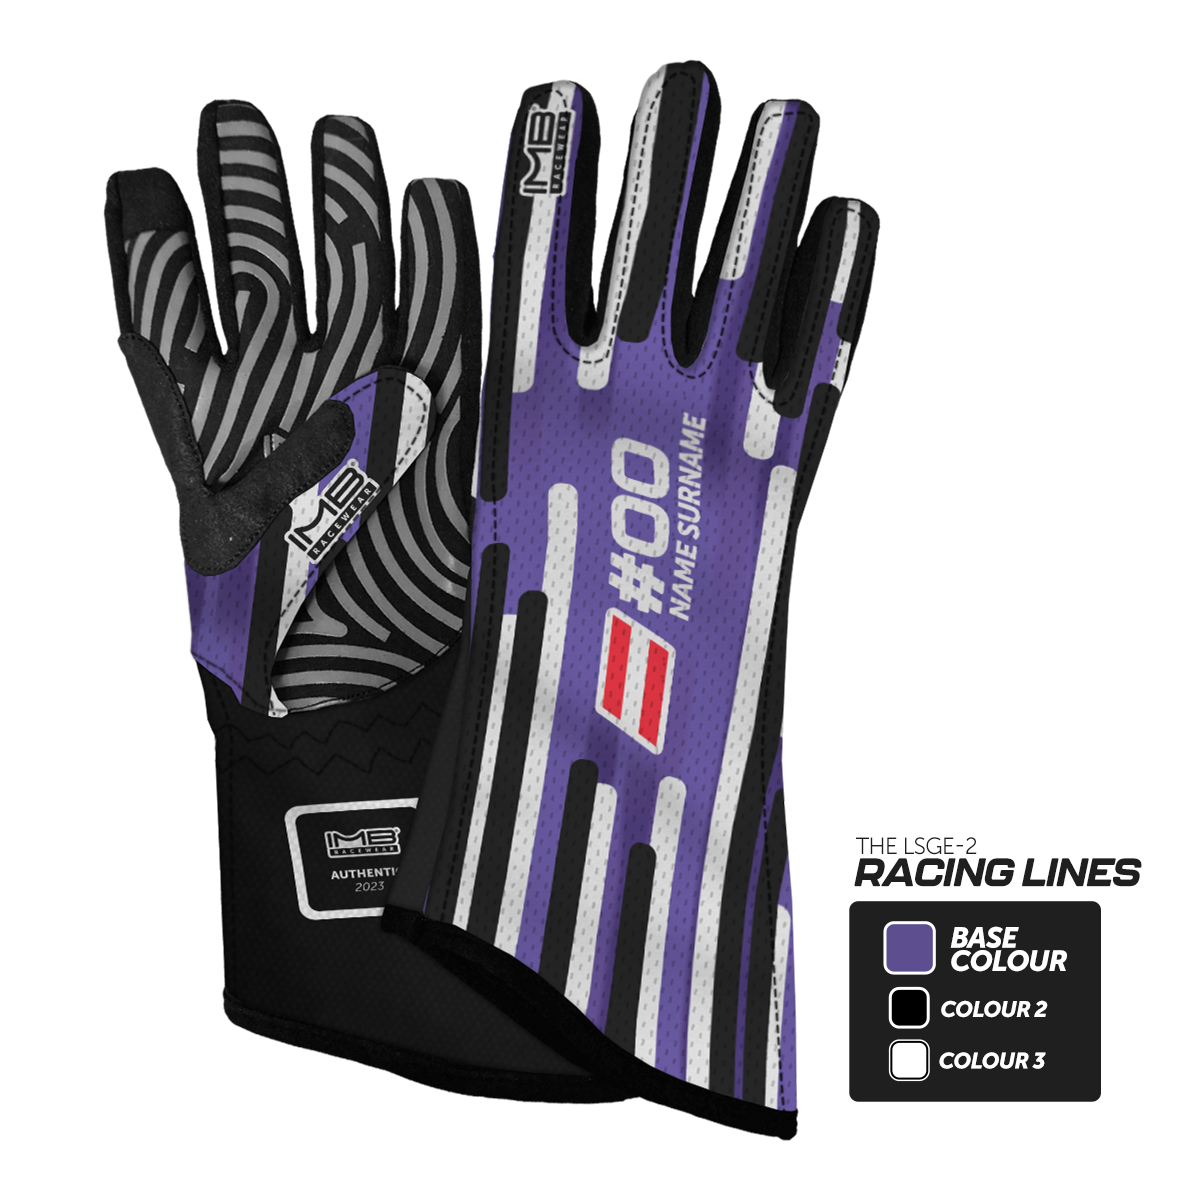 The Racing Lines LSGE-2 Long Sim Racing Gloves